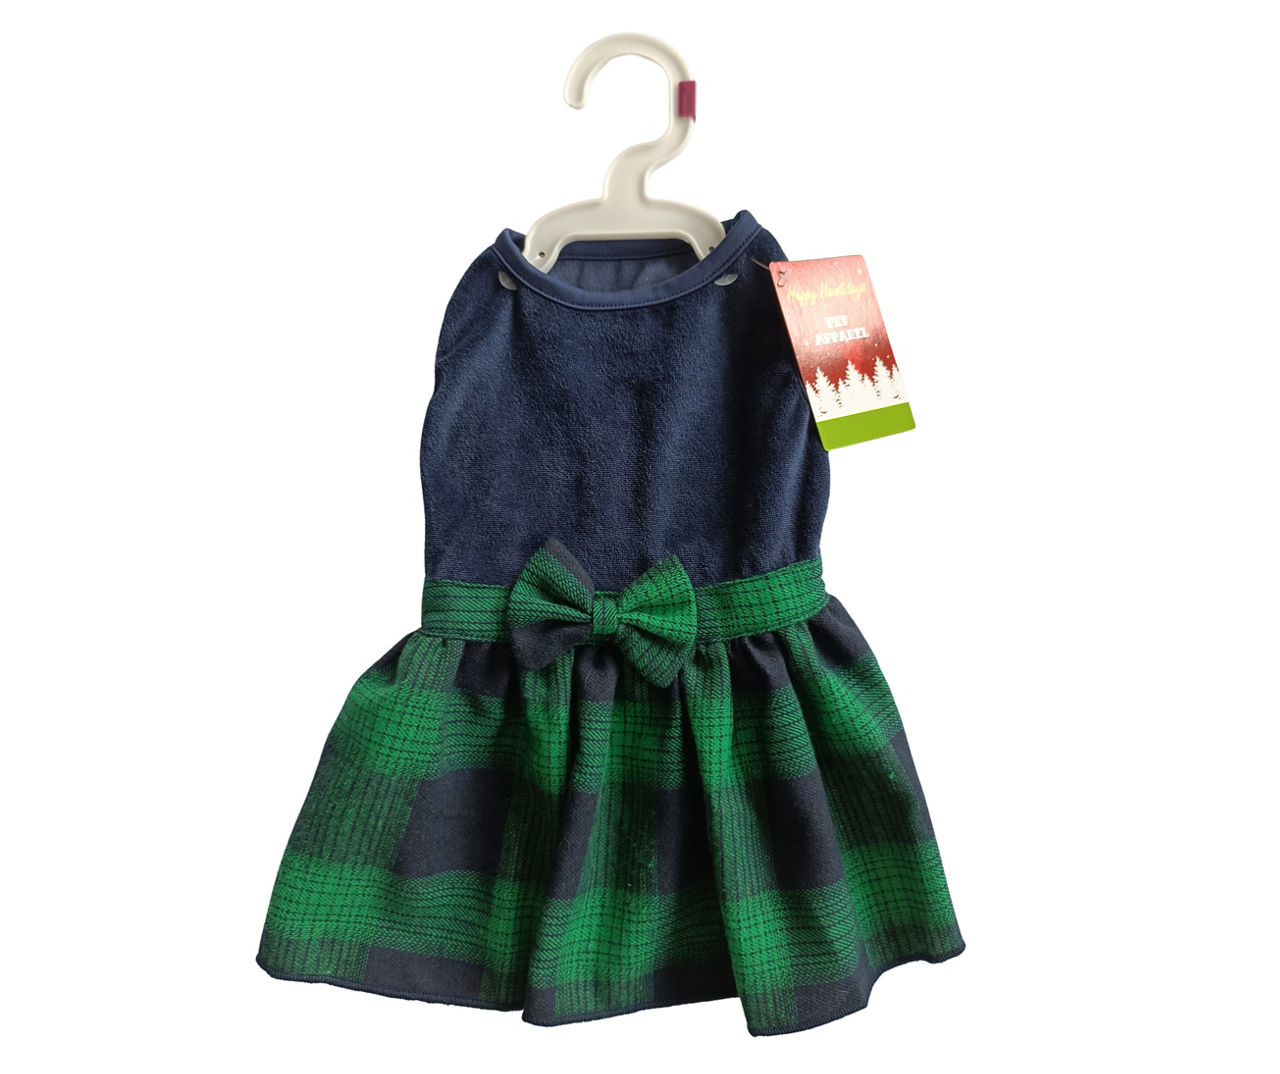 Pet X-Small Blue & Green Plaid Dress